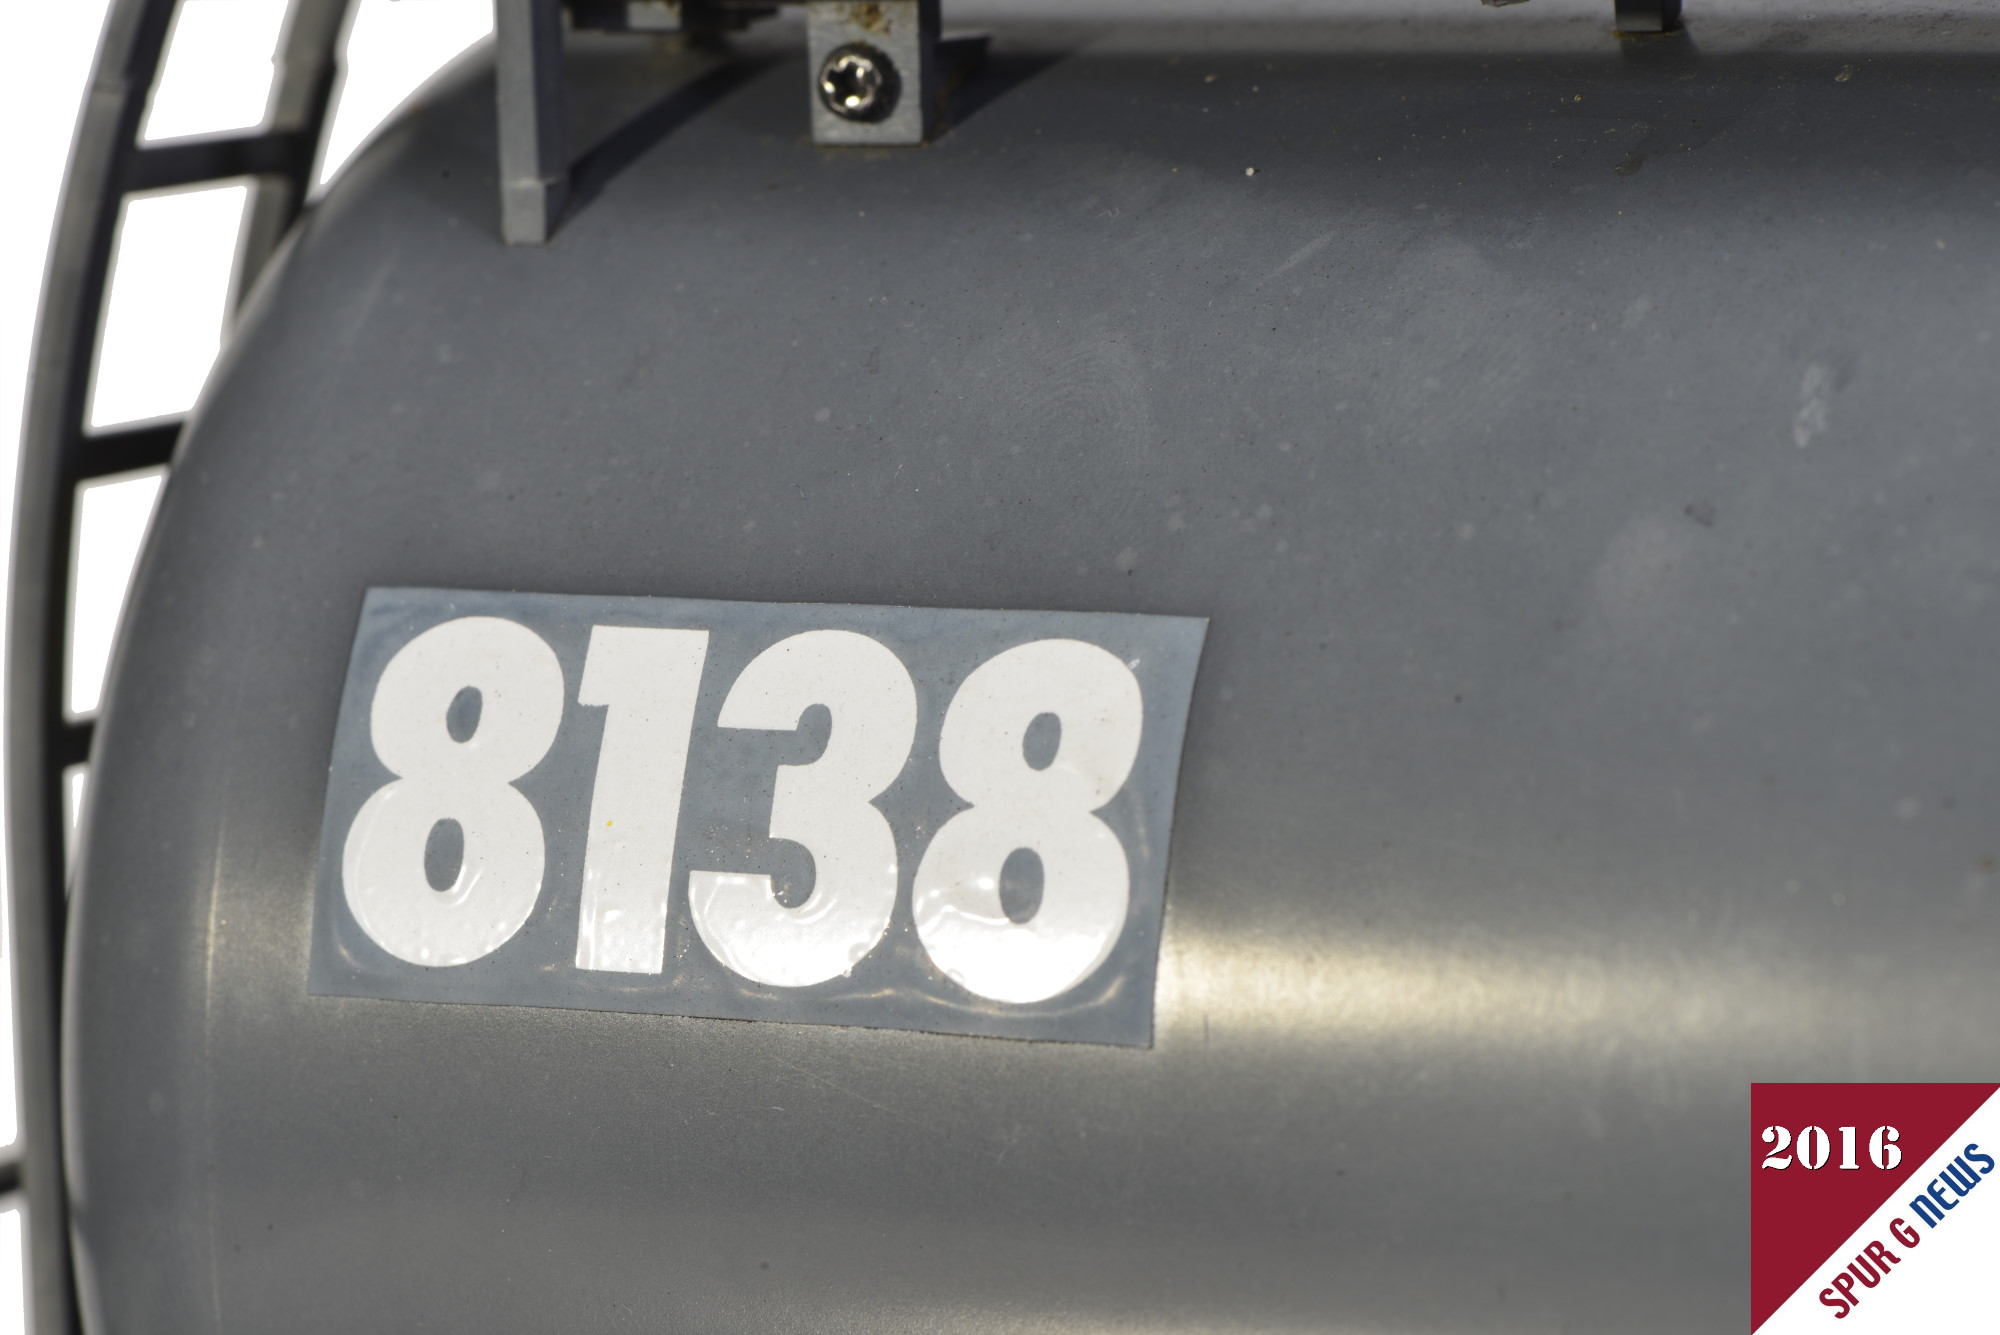 Wagennummer mit damals beigefgten Aufklebern in Nr. 8138 umbenannt. 